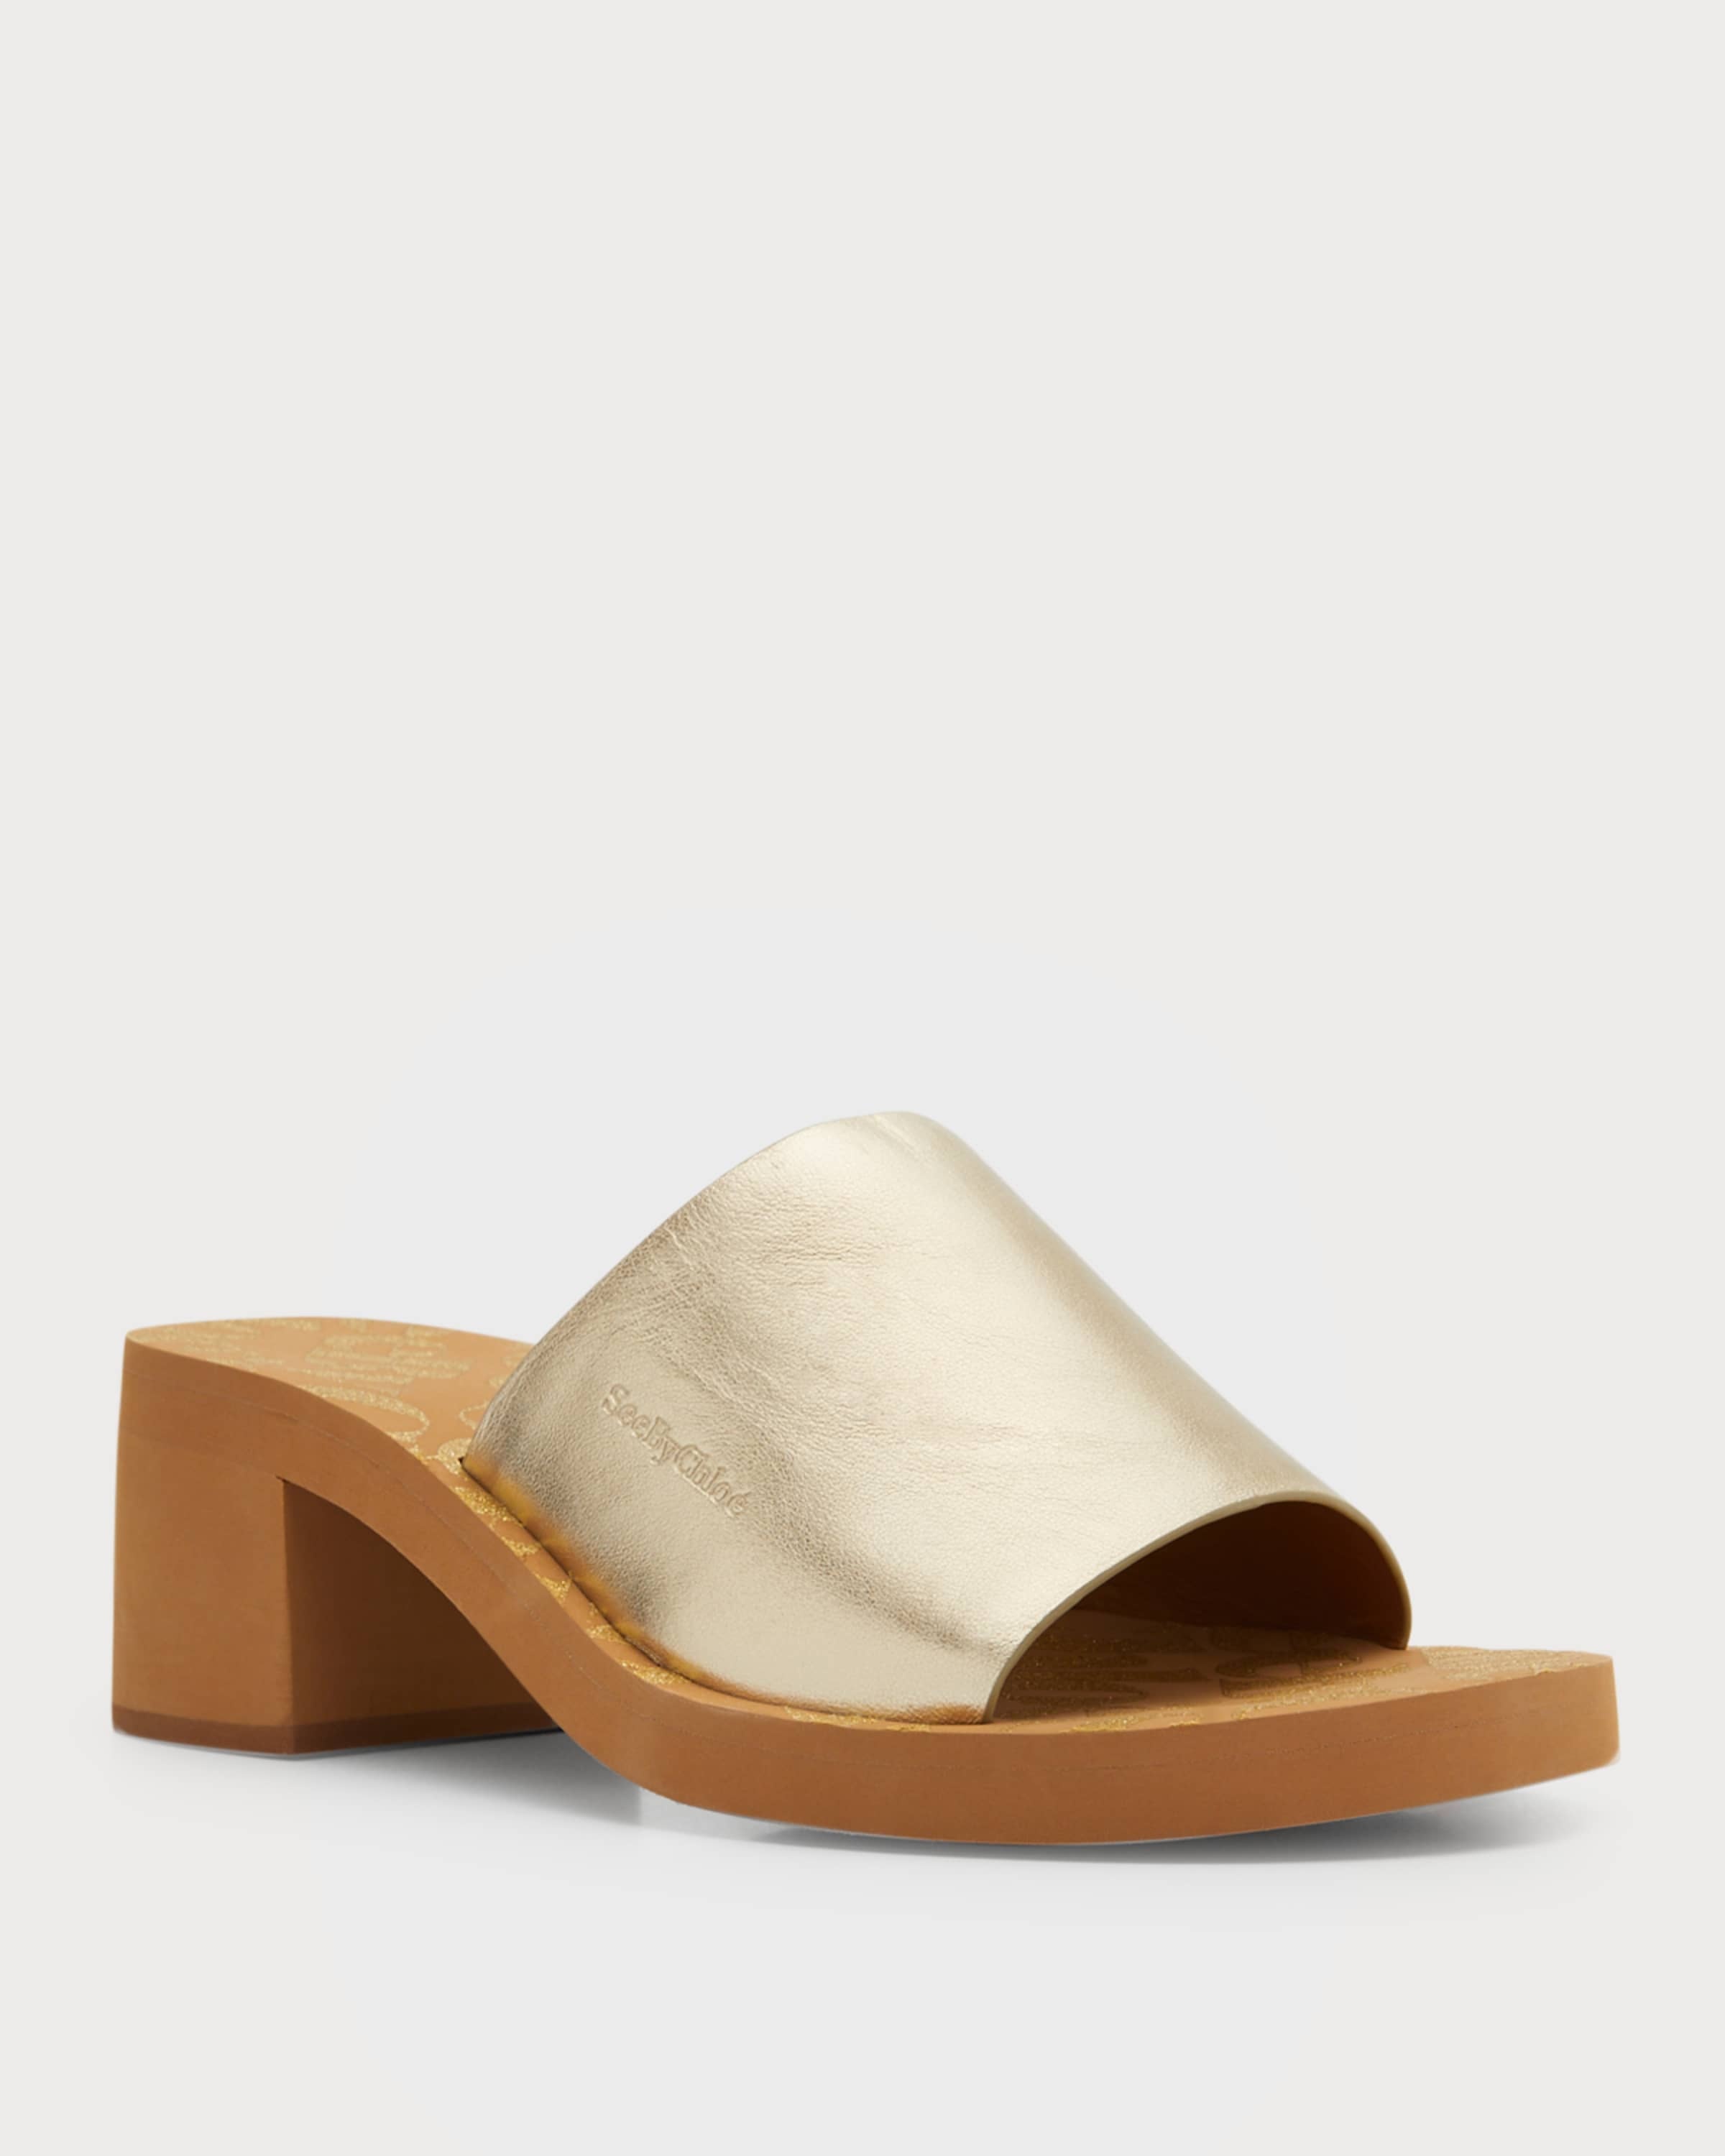 Essie Metallic Slide Sandals - 2